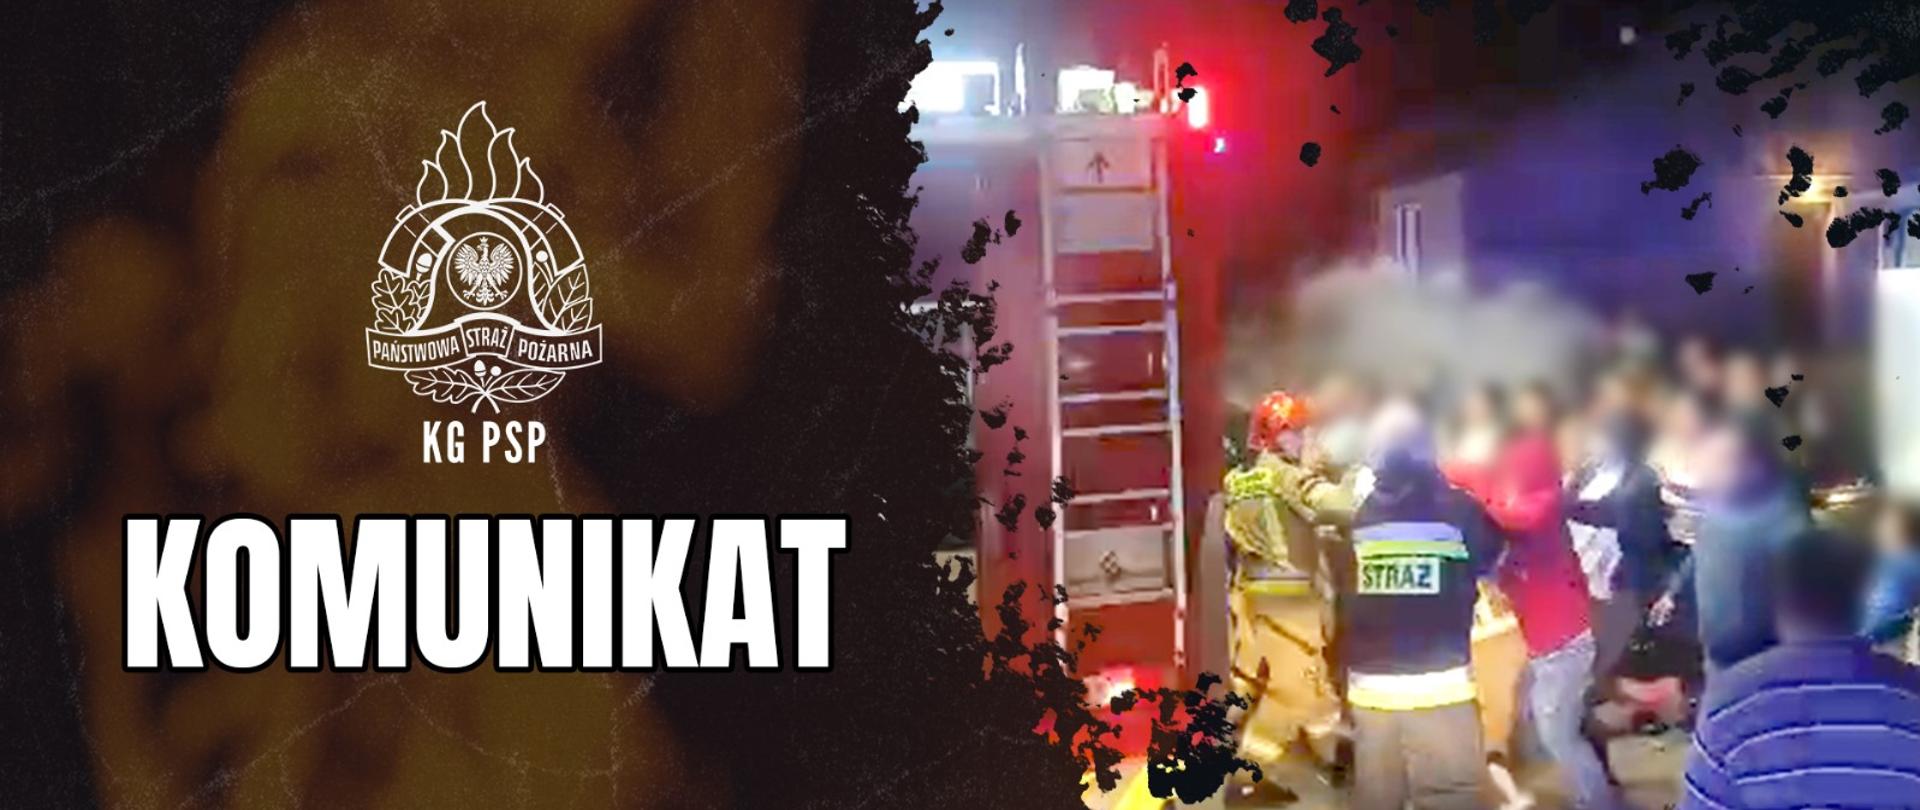 Zdjęcie grupy osób atakujących strażaków, (zamazany wizerunek twarzy), po lewej stronie logo PSP i napis KG PSP KOMUNIKAT